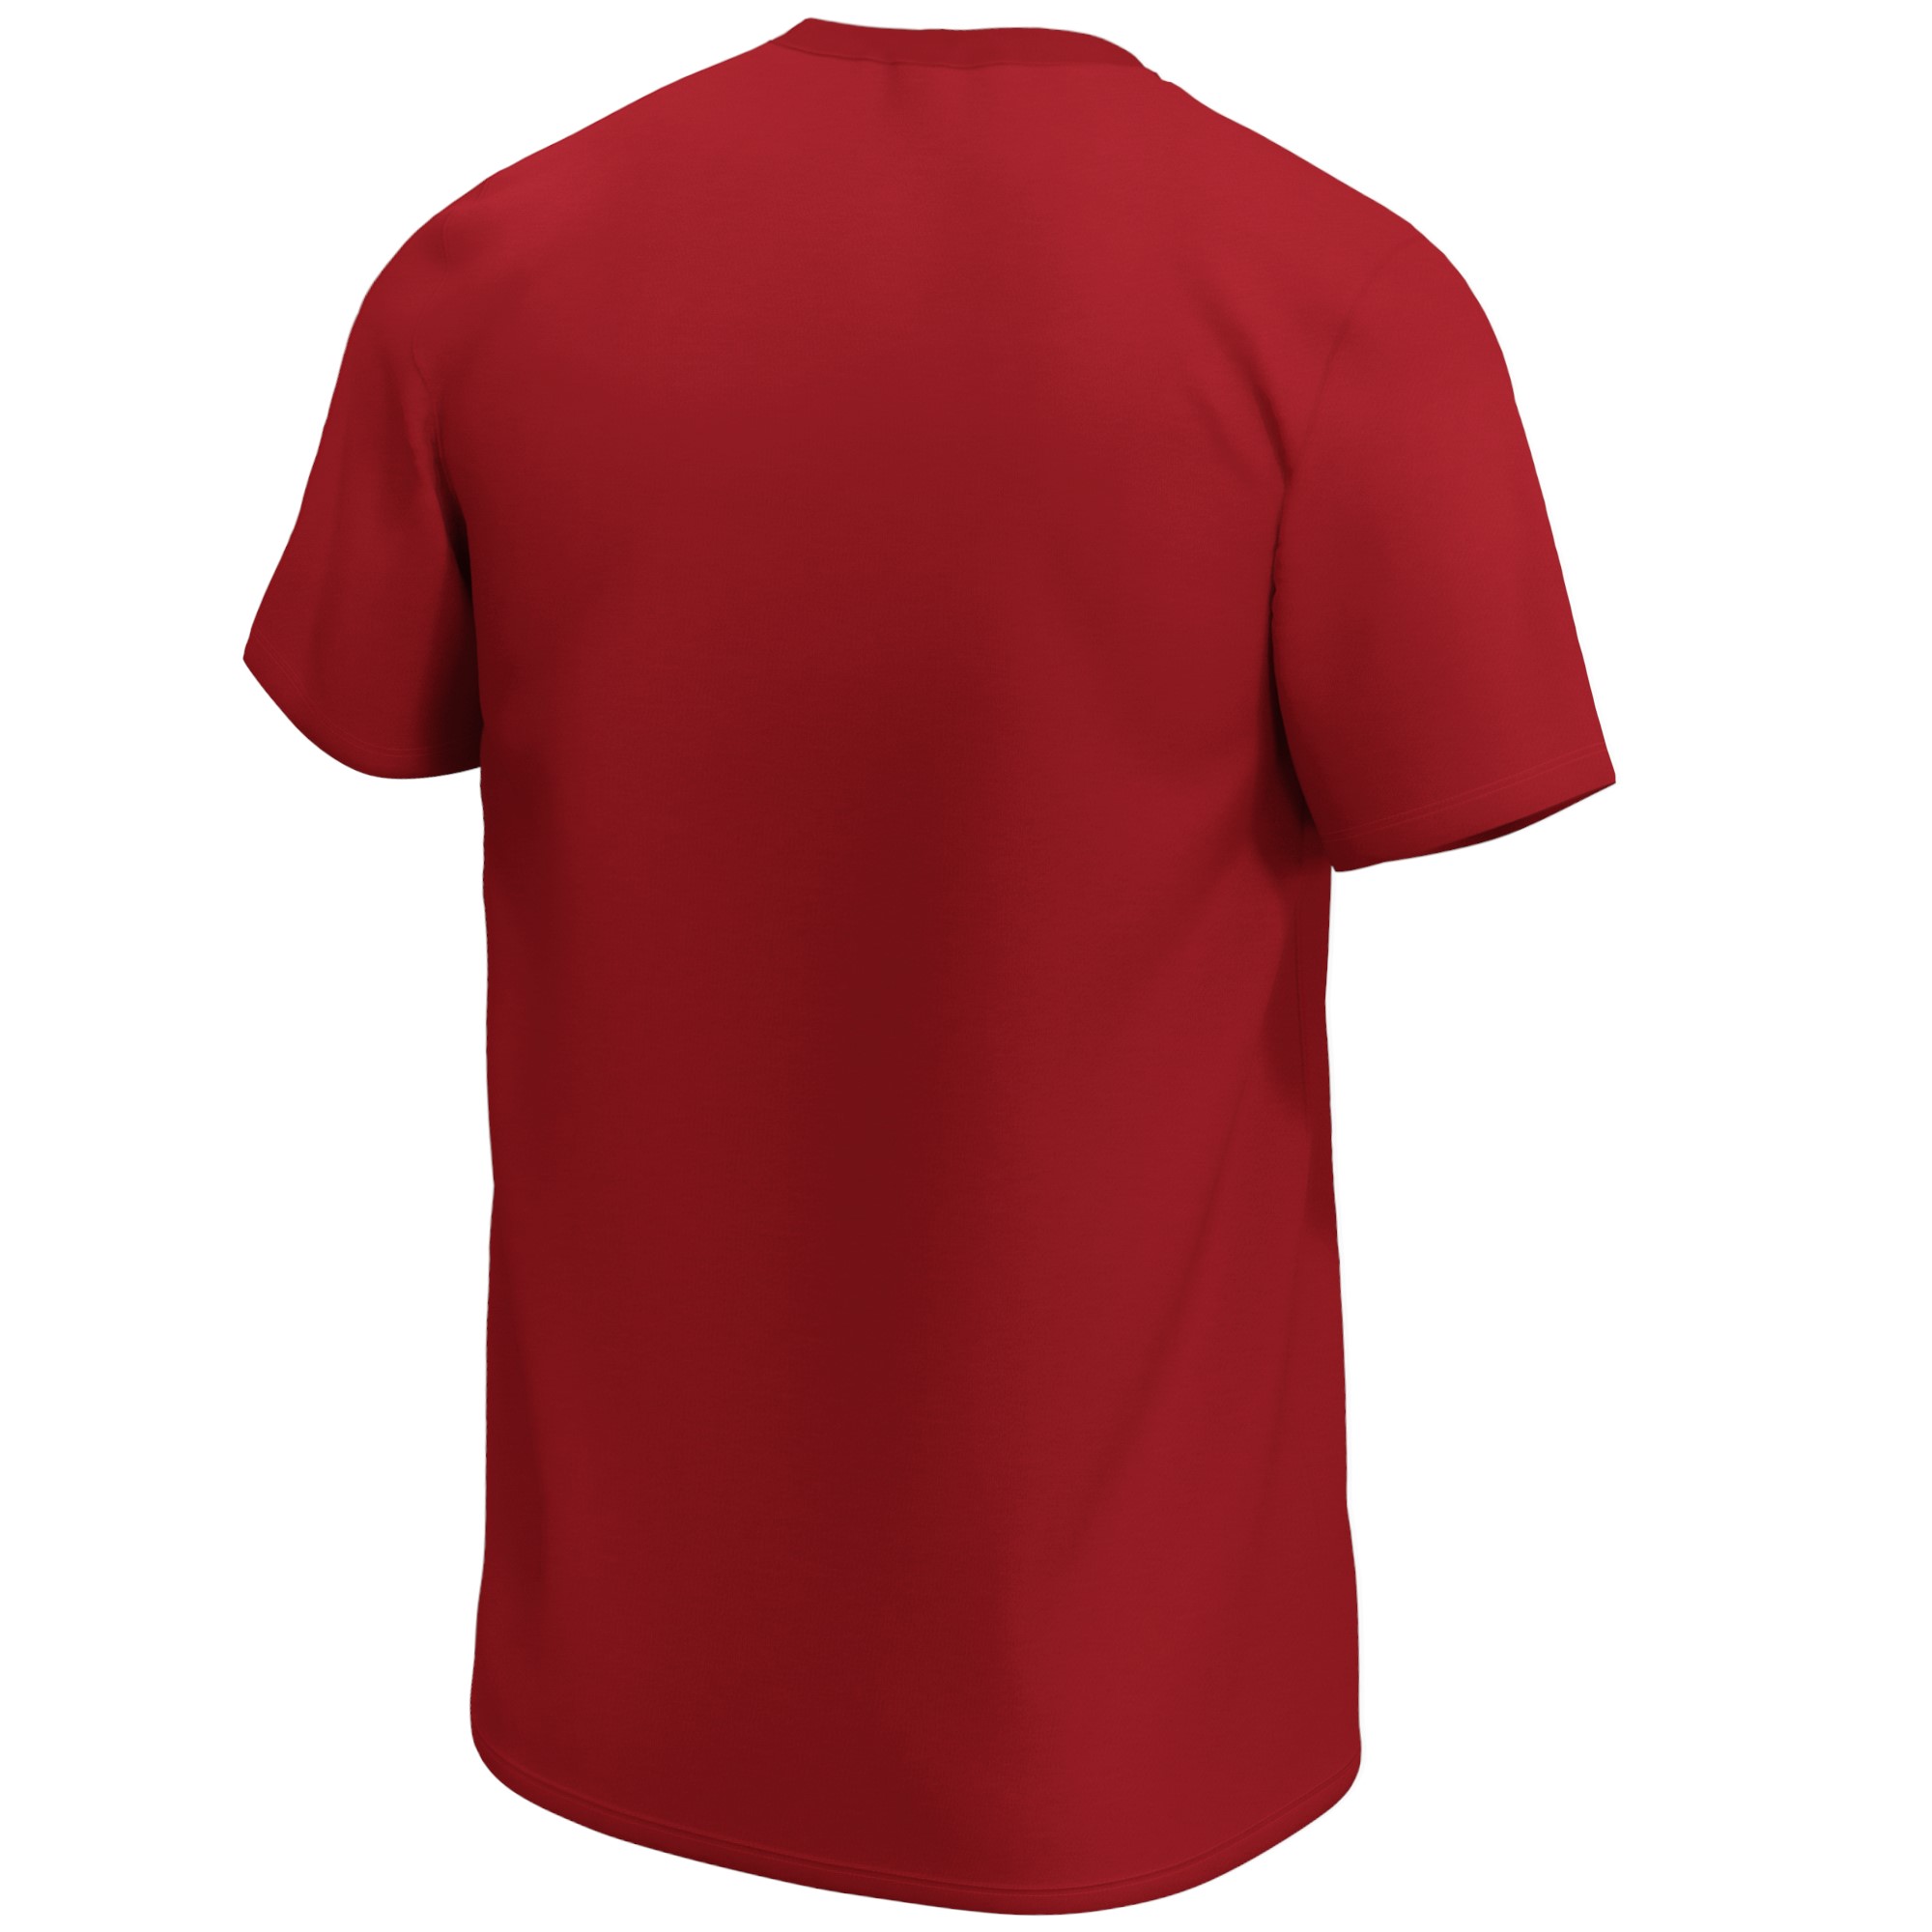 Tampa Bay Buccaneers NFL Mid Essentials Crest T-Shirt Fanatics